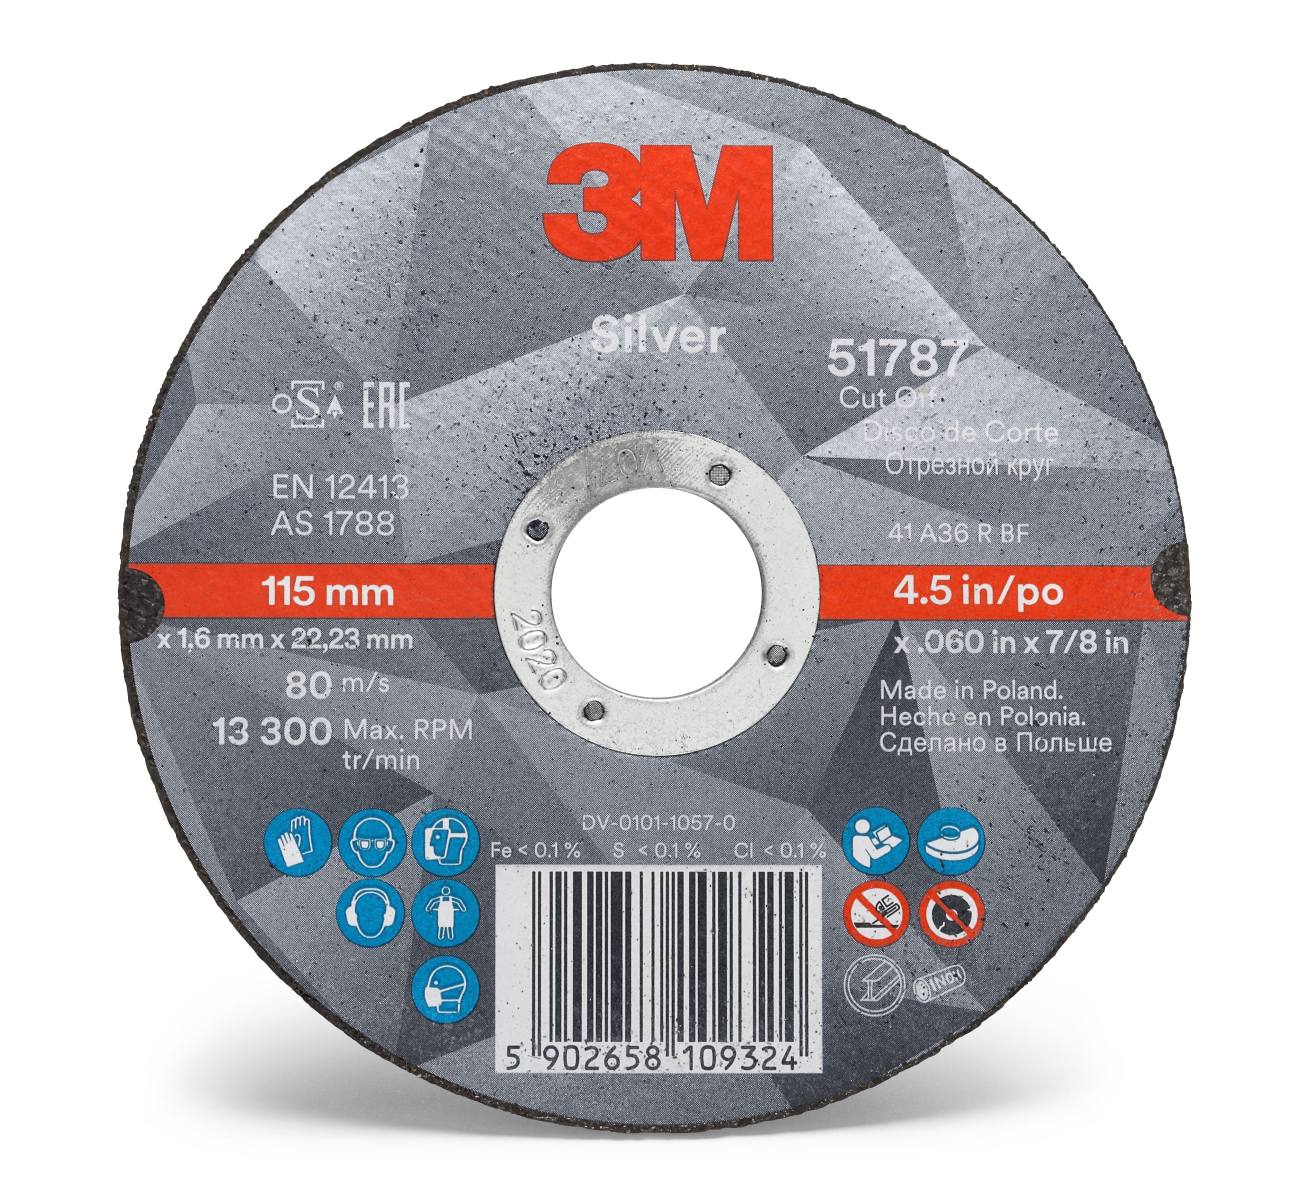 3M Silver Cut-Off Wheel Disque à tronçonner, 125 mm, 1,0 mm, 22,23 mm, T41, 51790